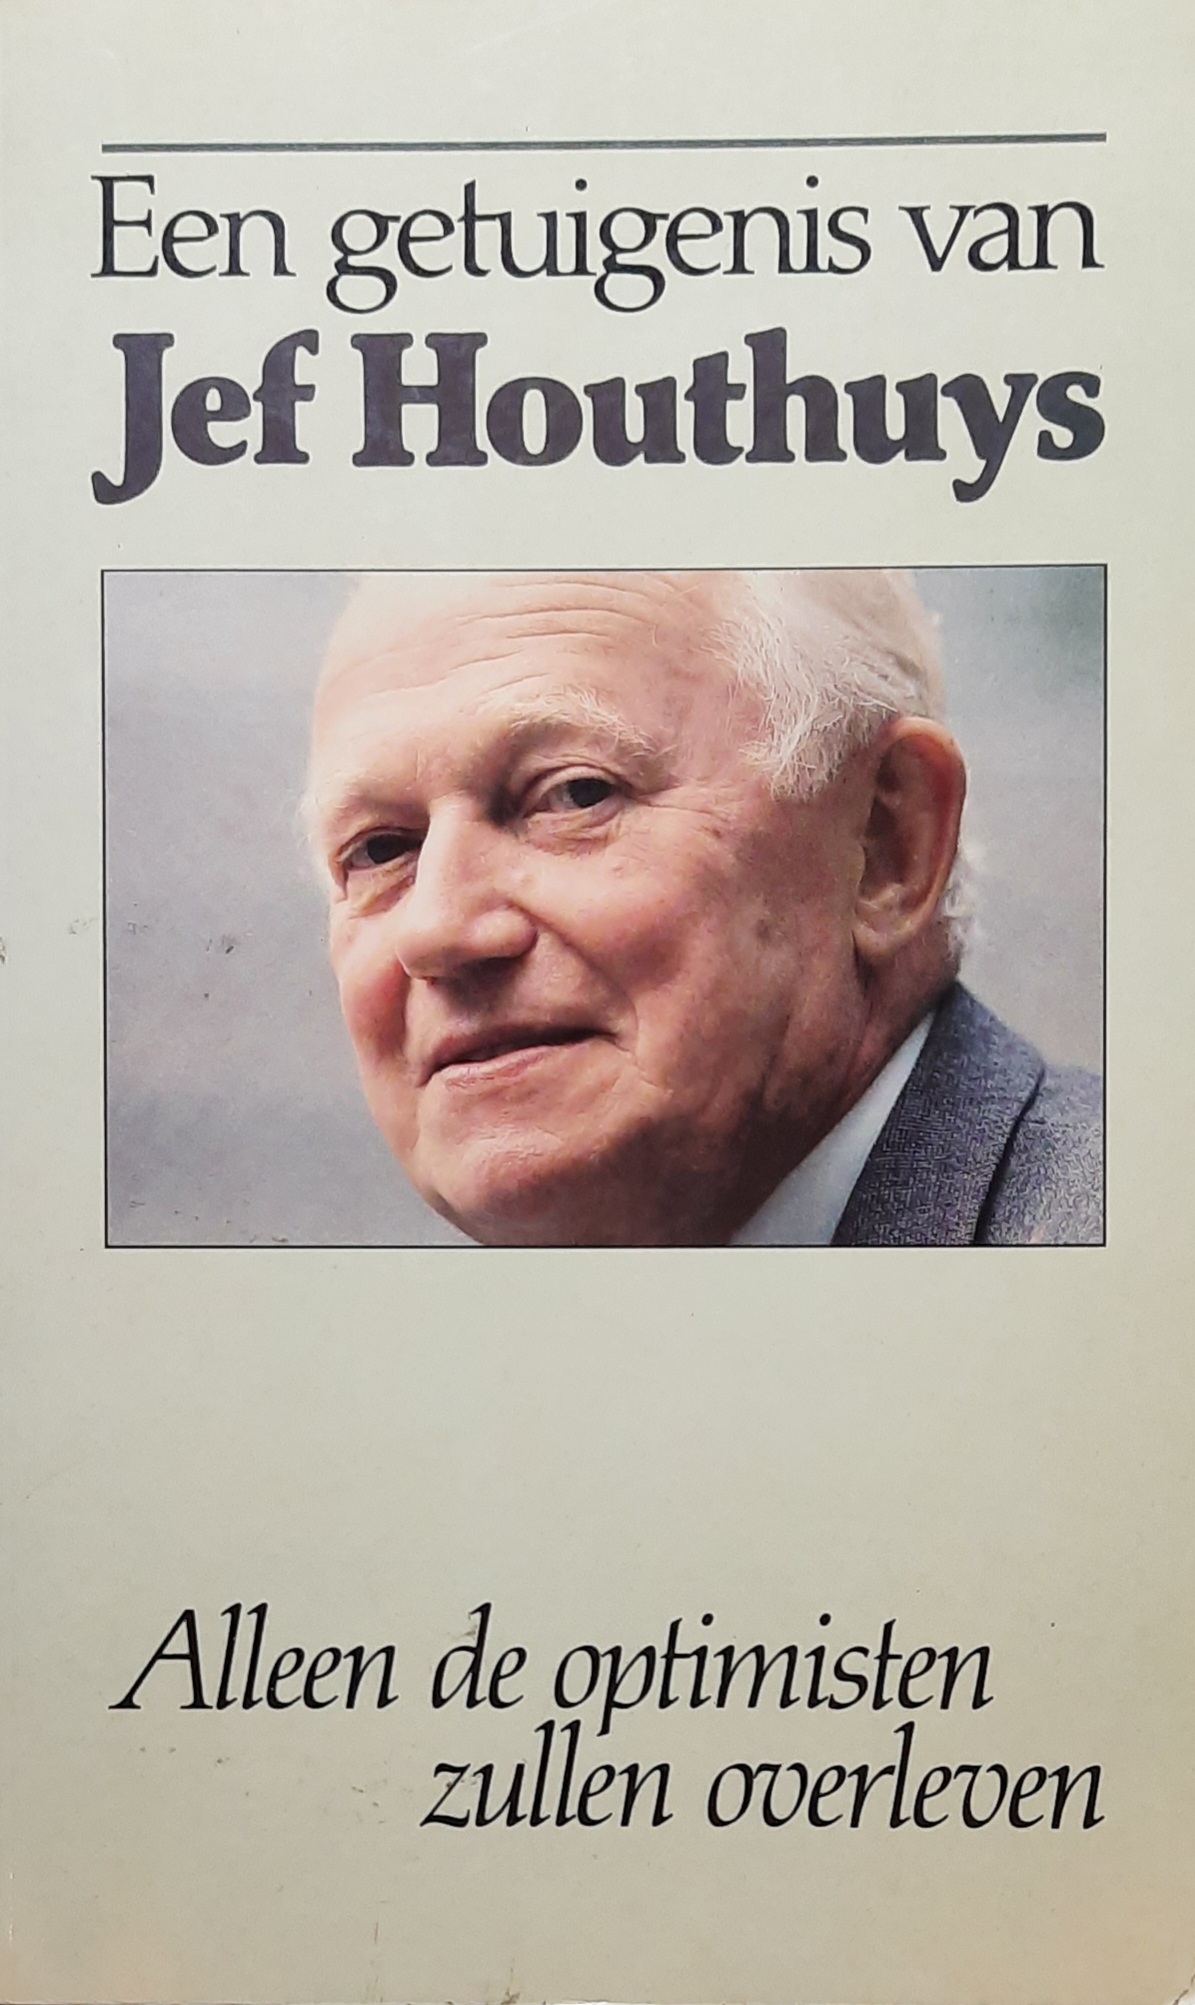 Book cover 19870190: STANDAERT Maurits, HOUTHUYS Jef | Een getuigenis van Jef Houthuys. Alleen de optimisten zullen overleven. [old book number 19870156A]